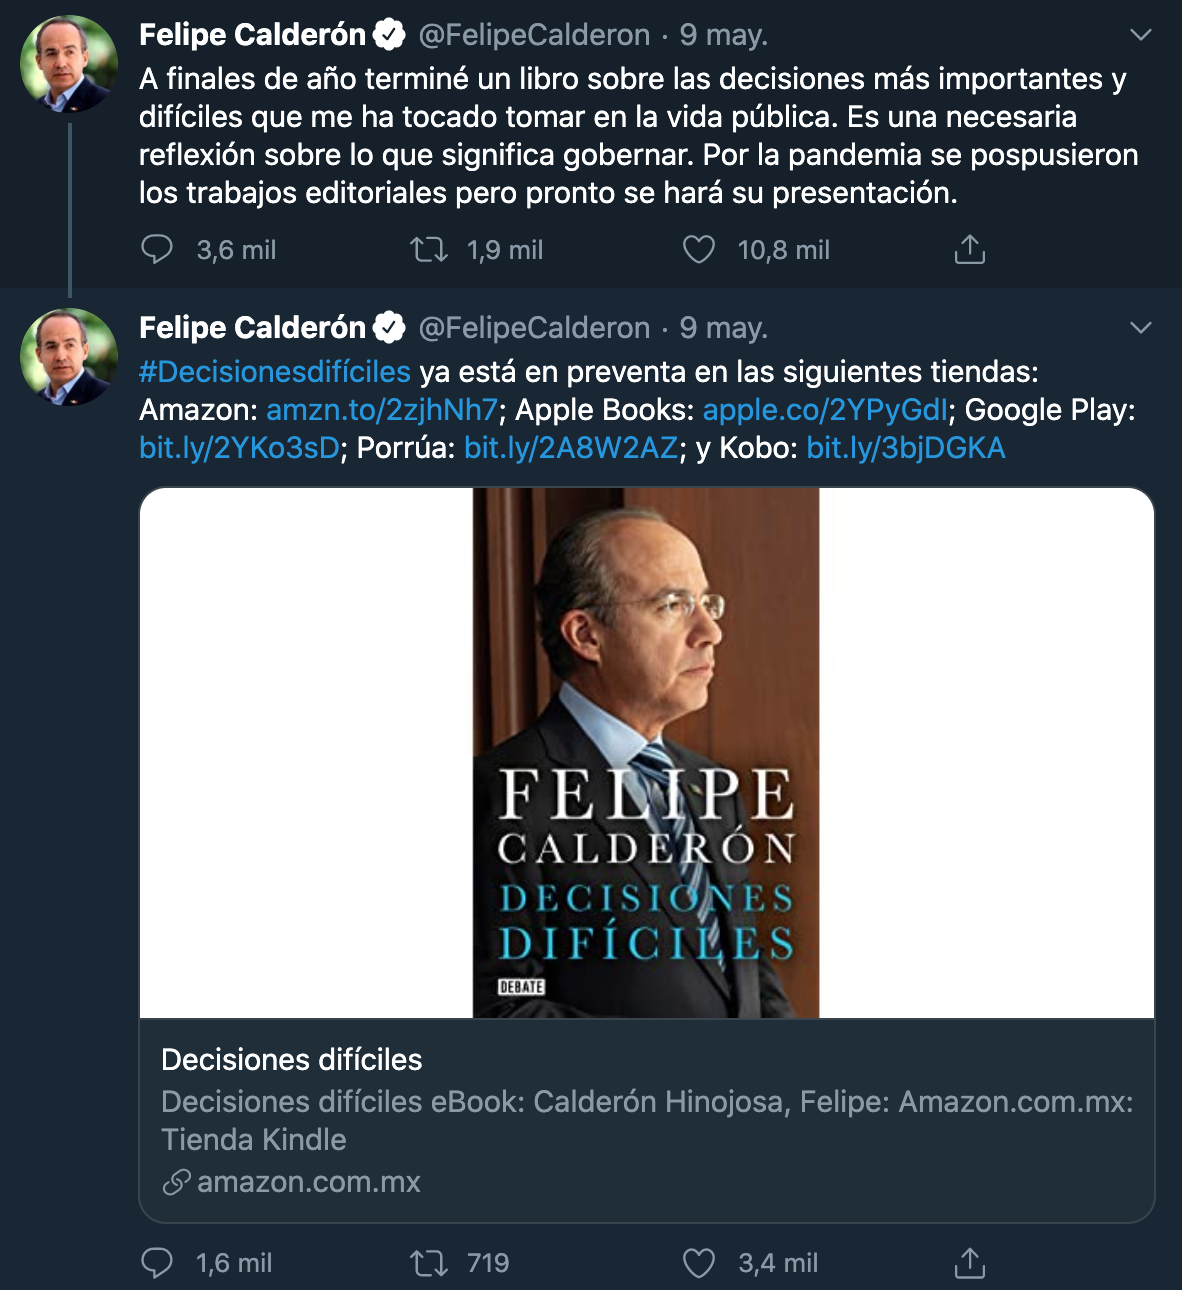 Calderón anuncia su libro "Decisiones difíciles" Foto: Twitter / @FelipeCalderon